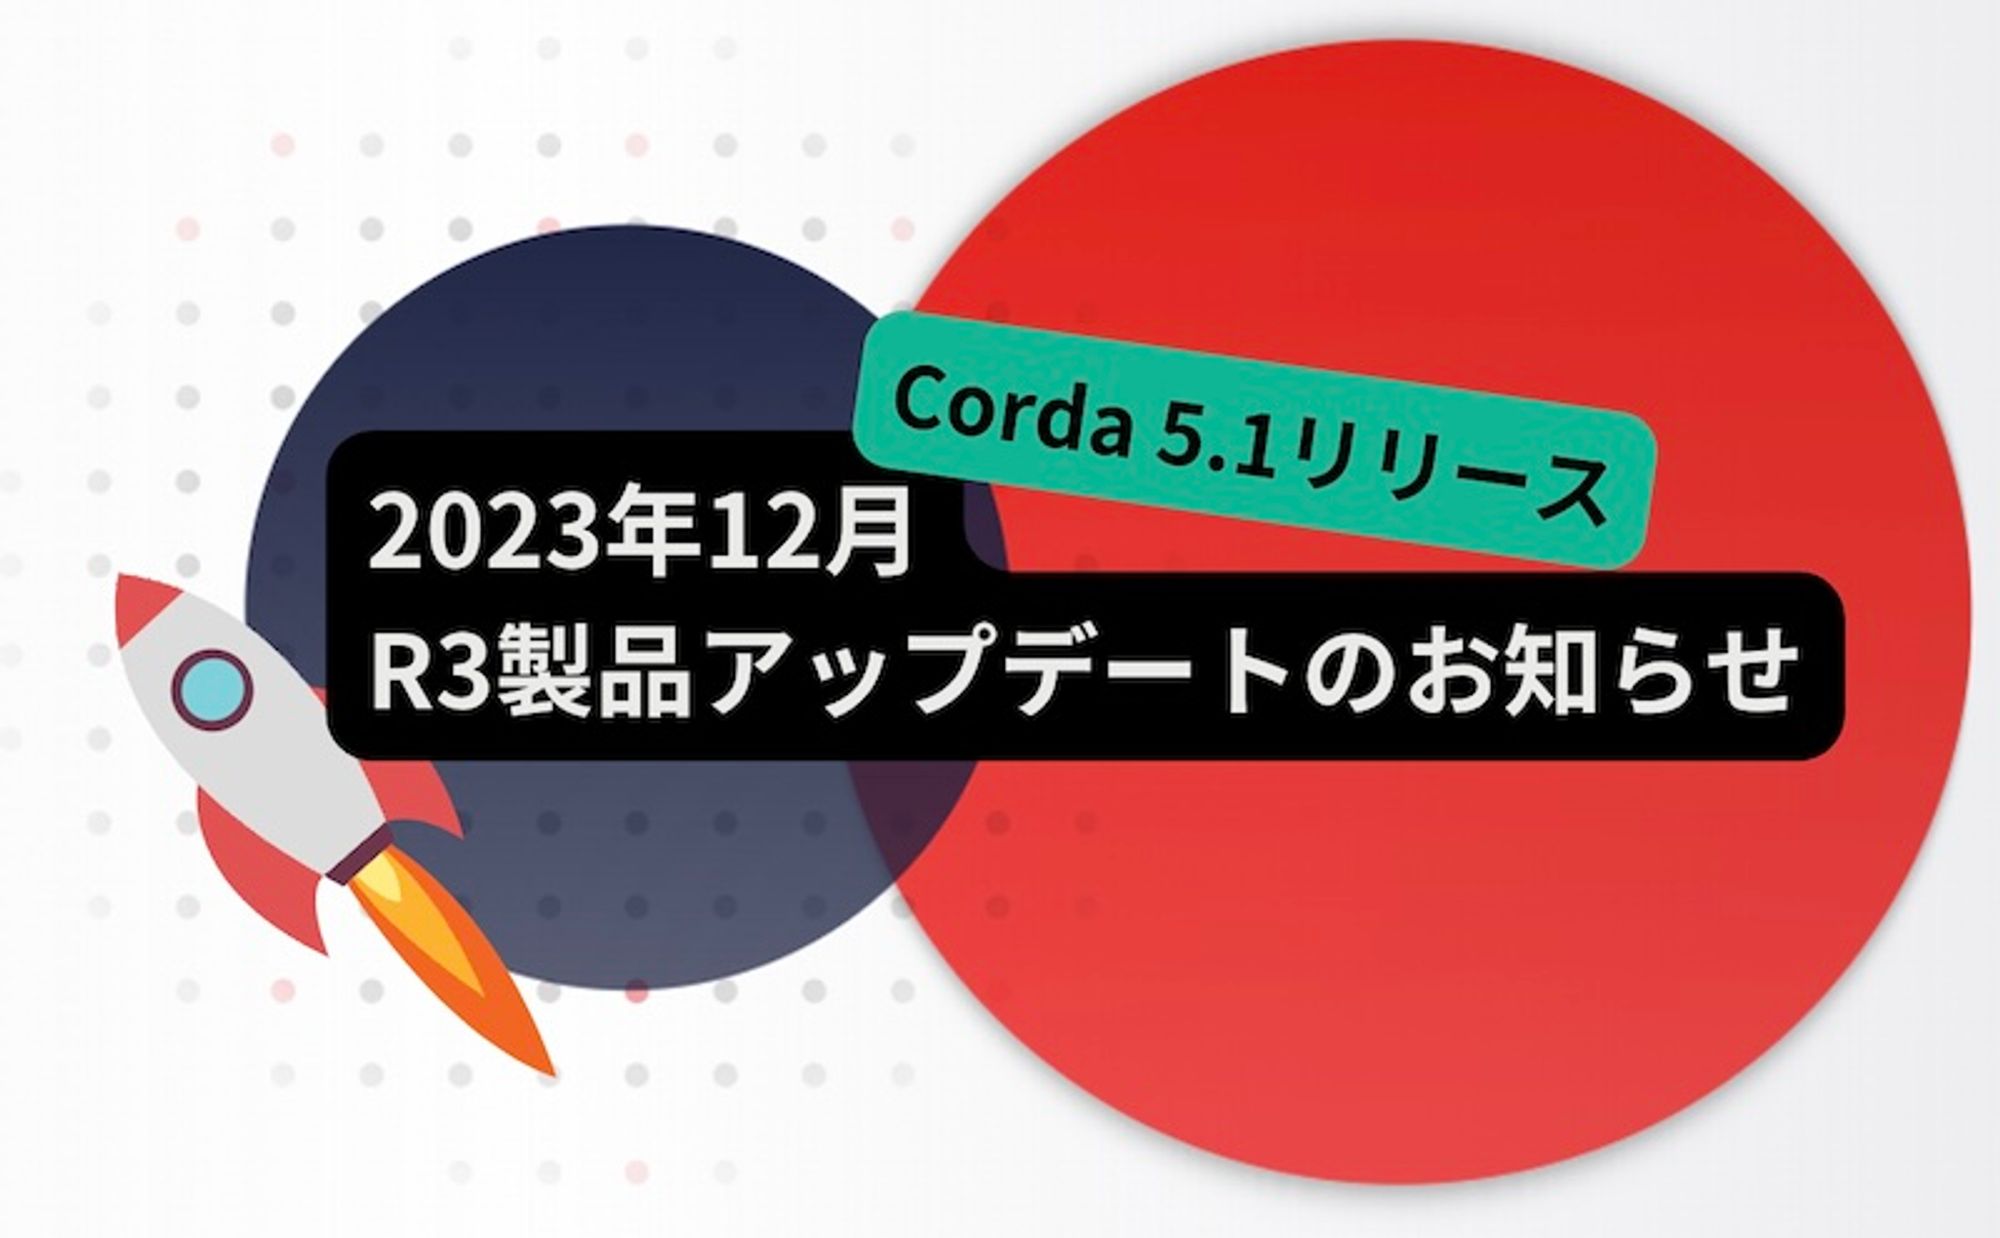 Corda 5.1リリースほか、R3製品アップデートのお知らせ(2023年12月)